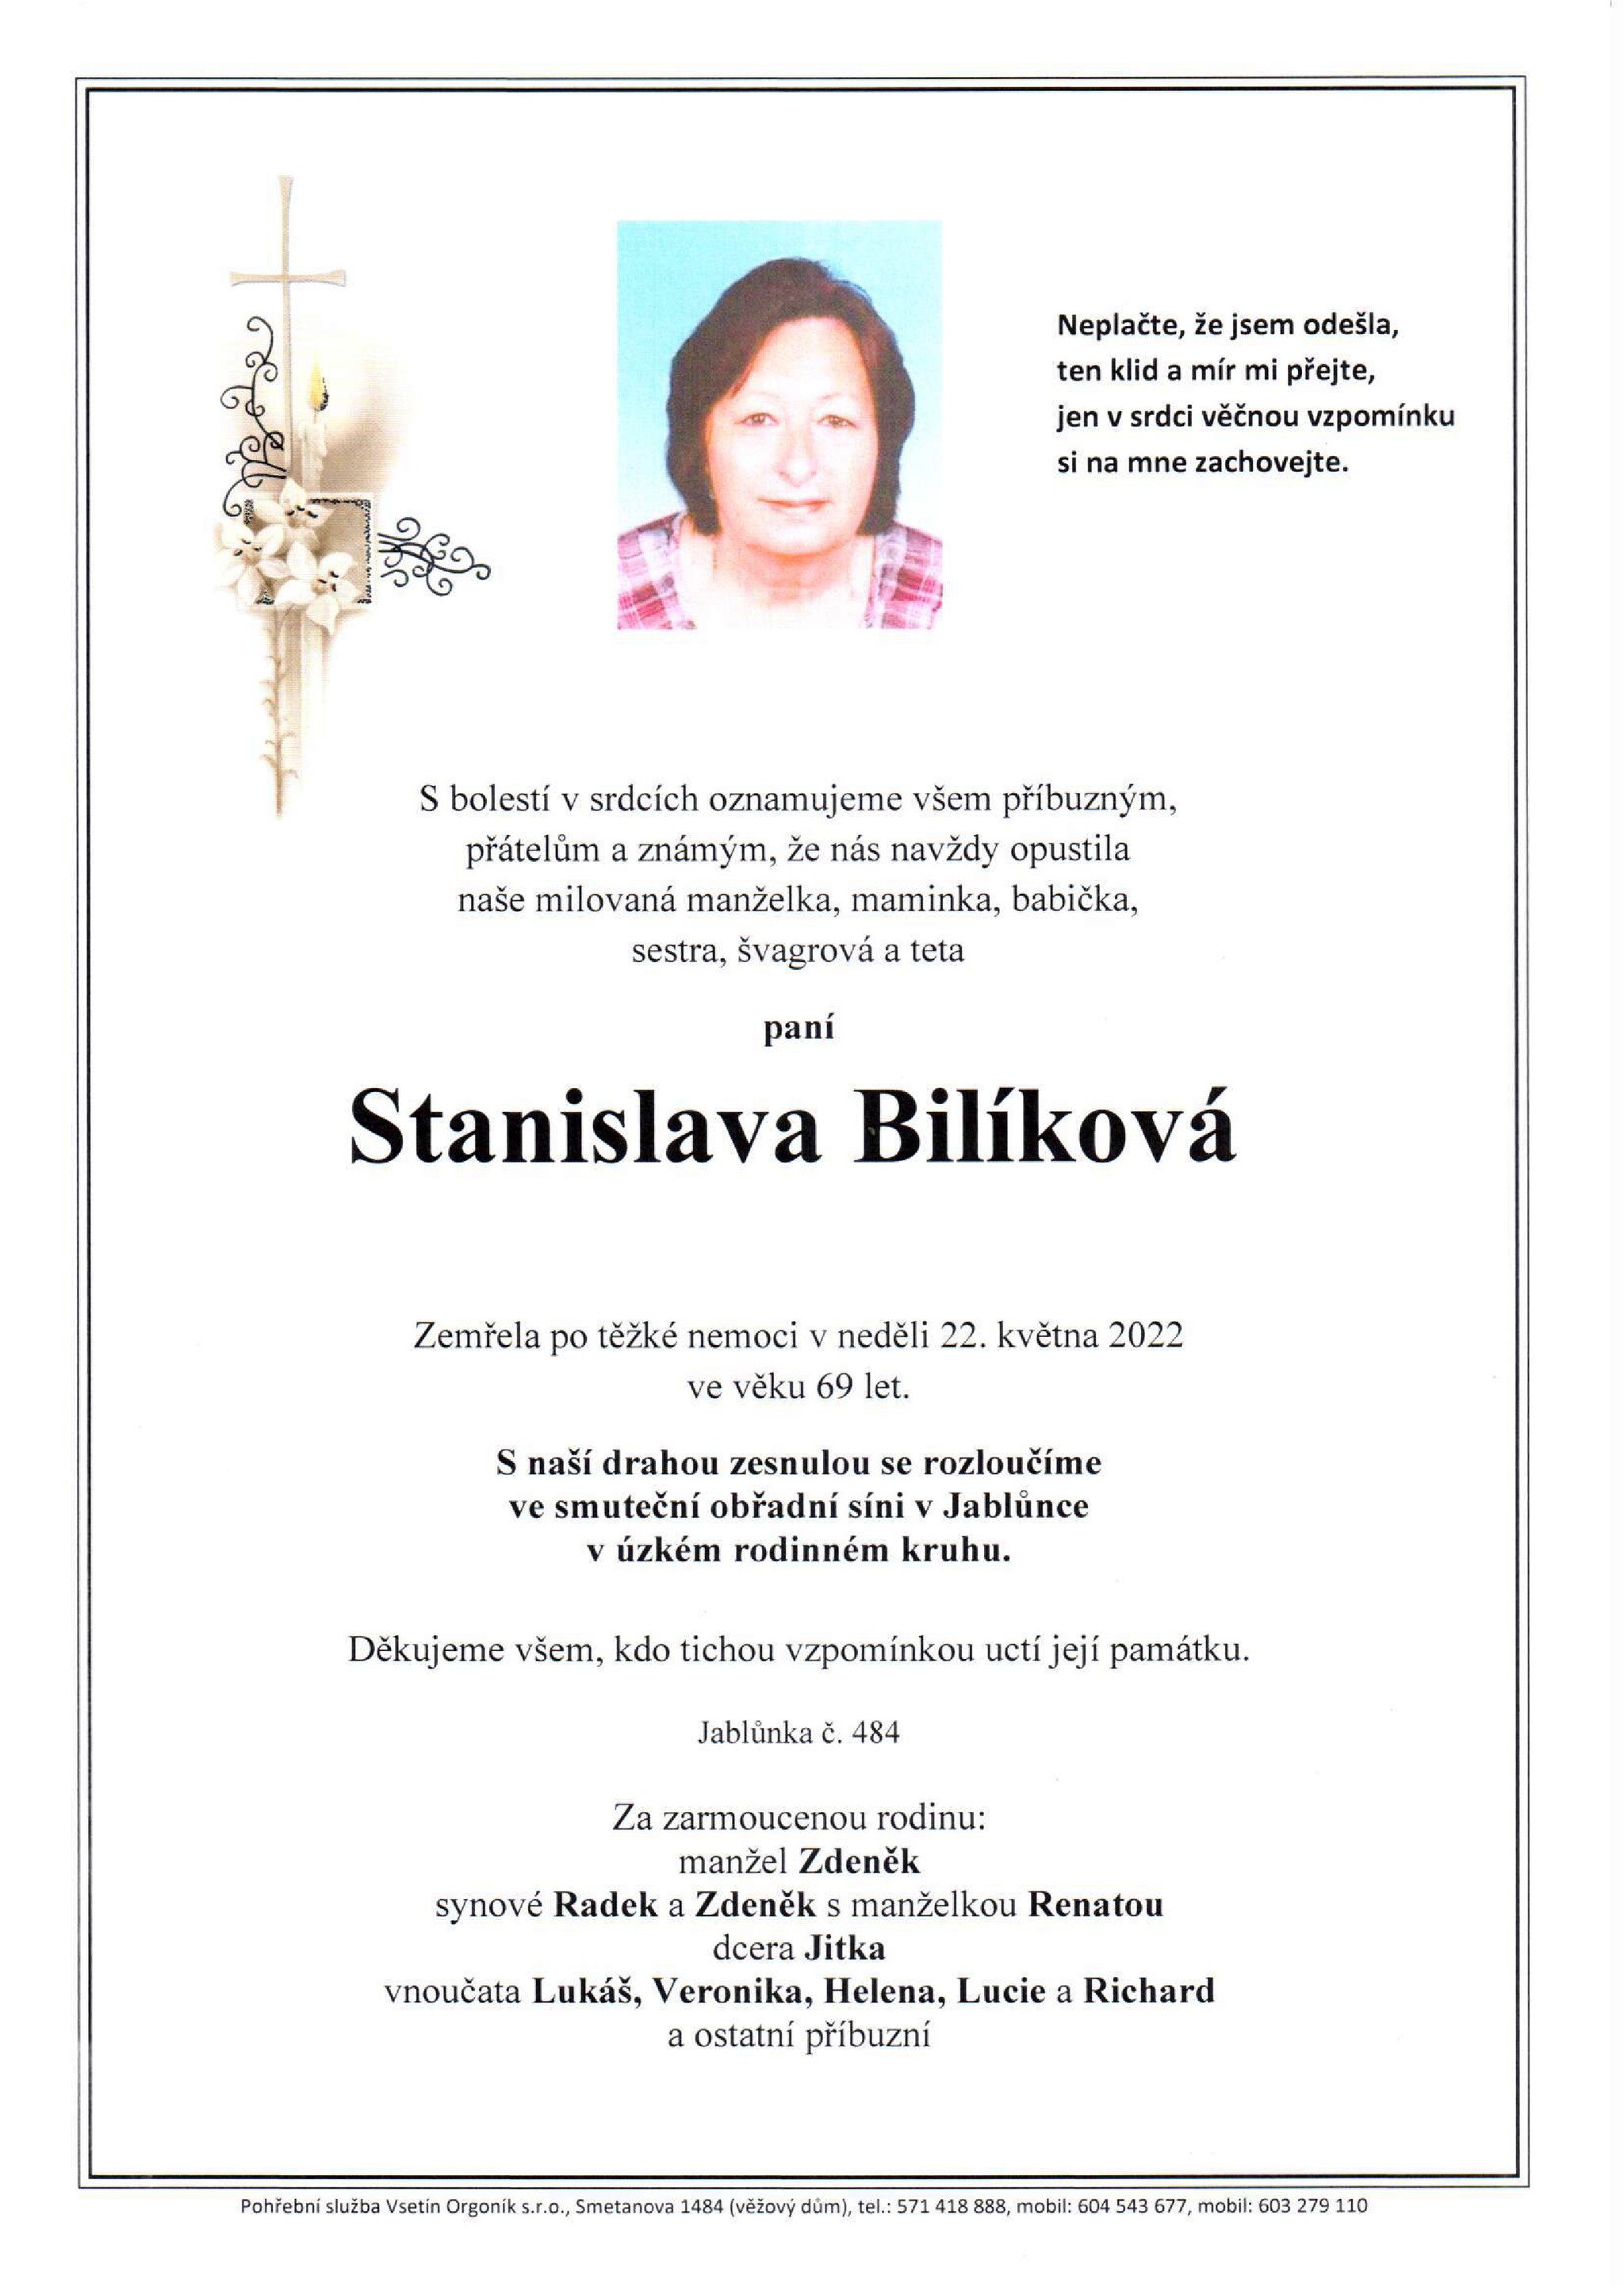 Stanislava Bilíková